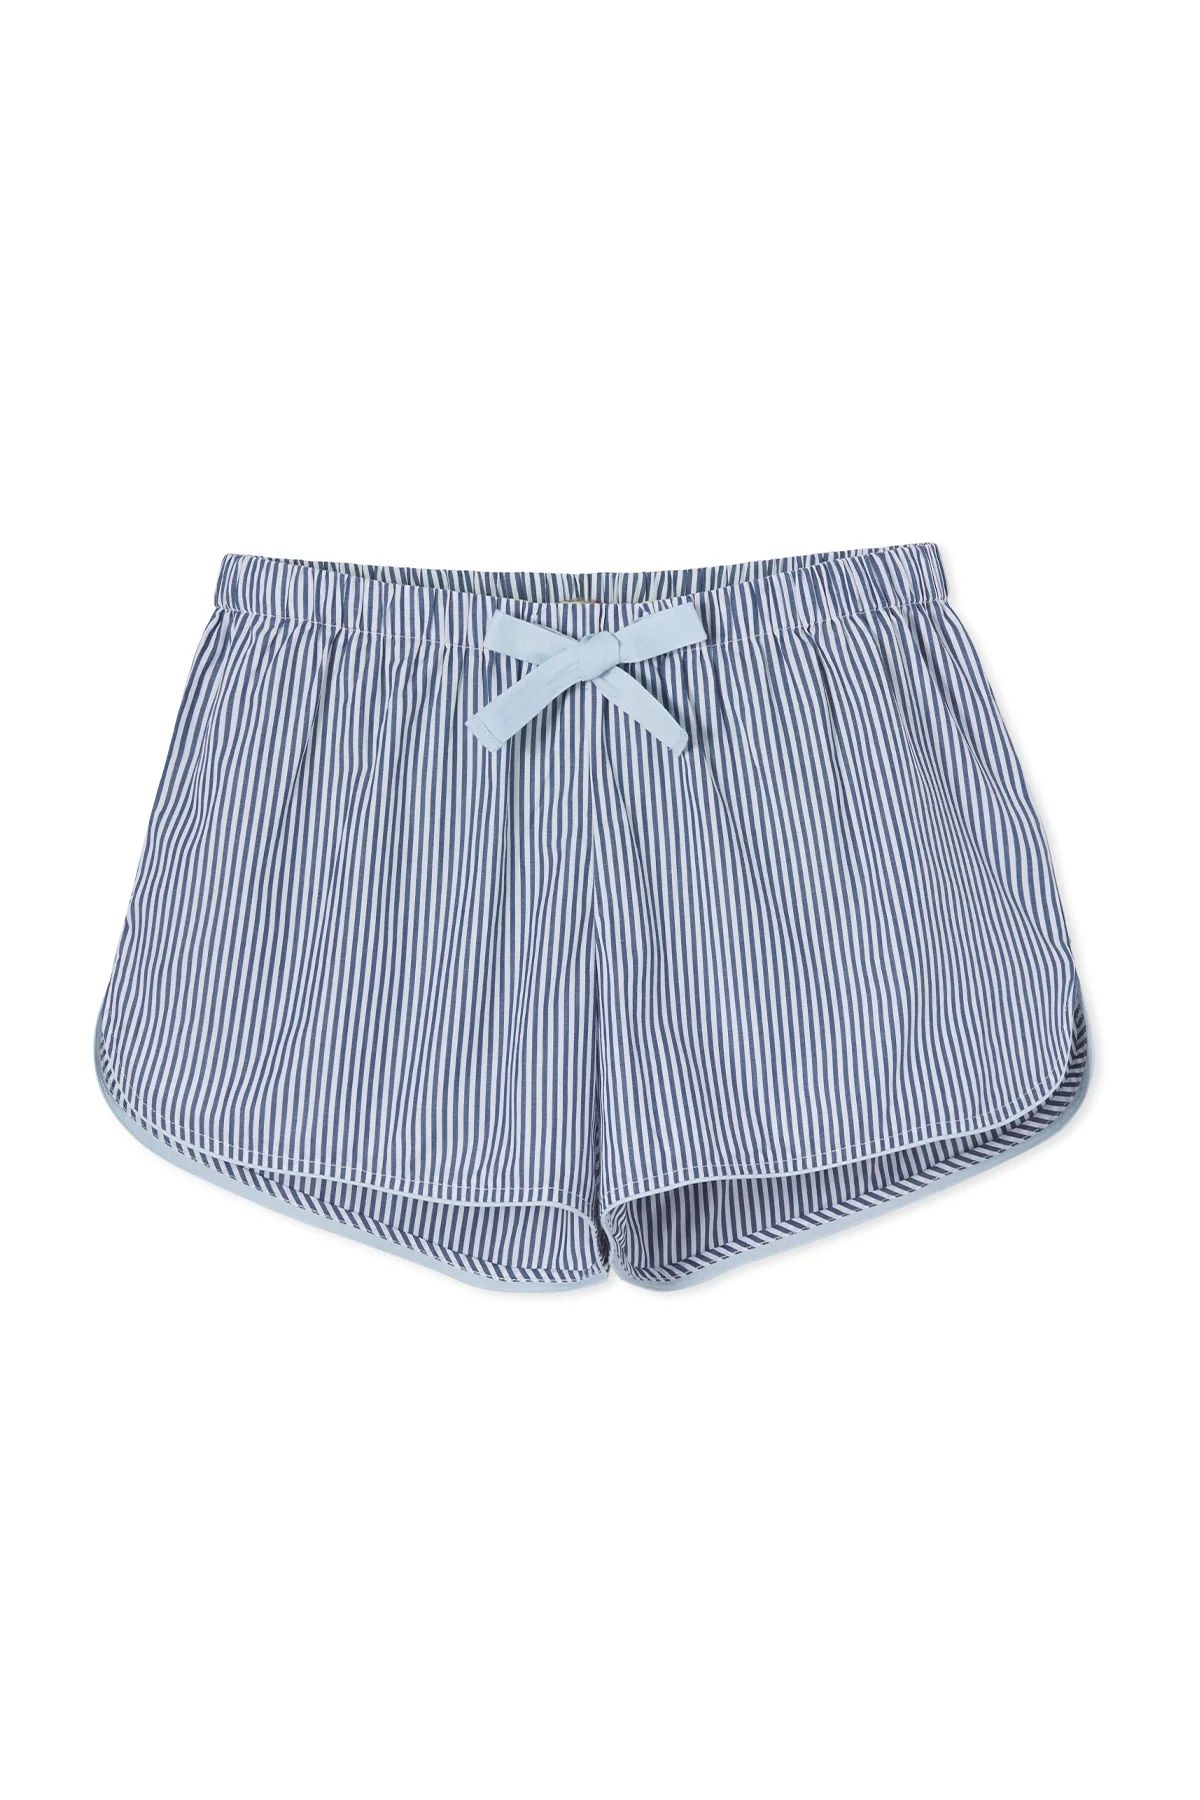 Boxer in Navy Stripe | LAKE Pajamas